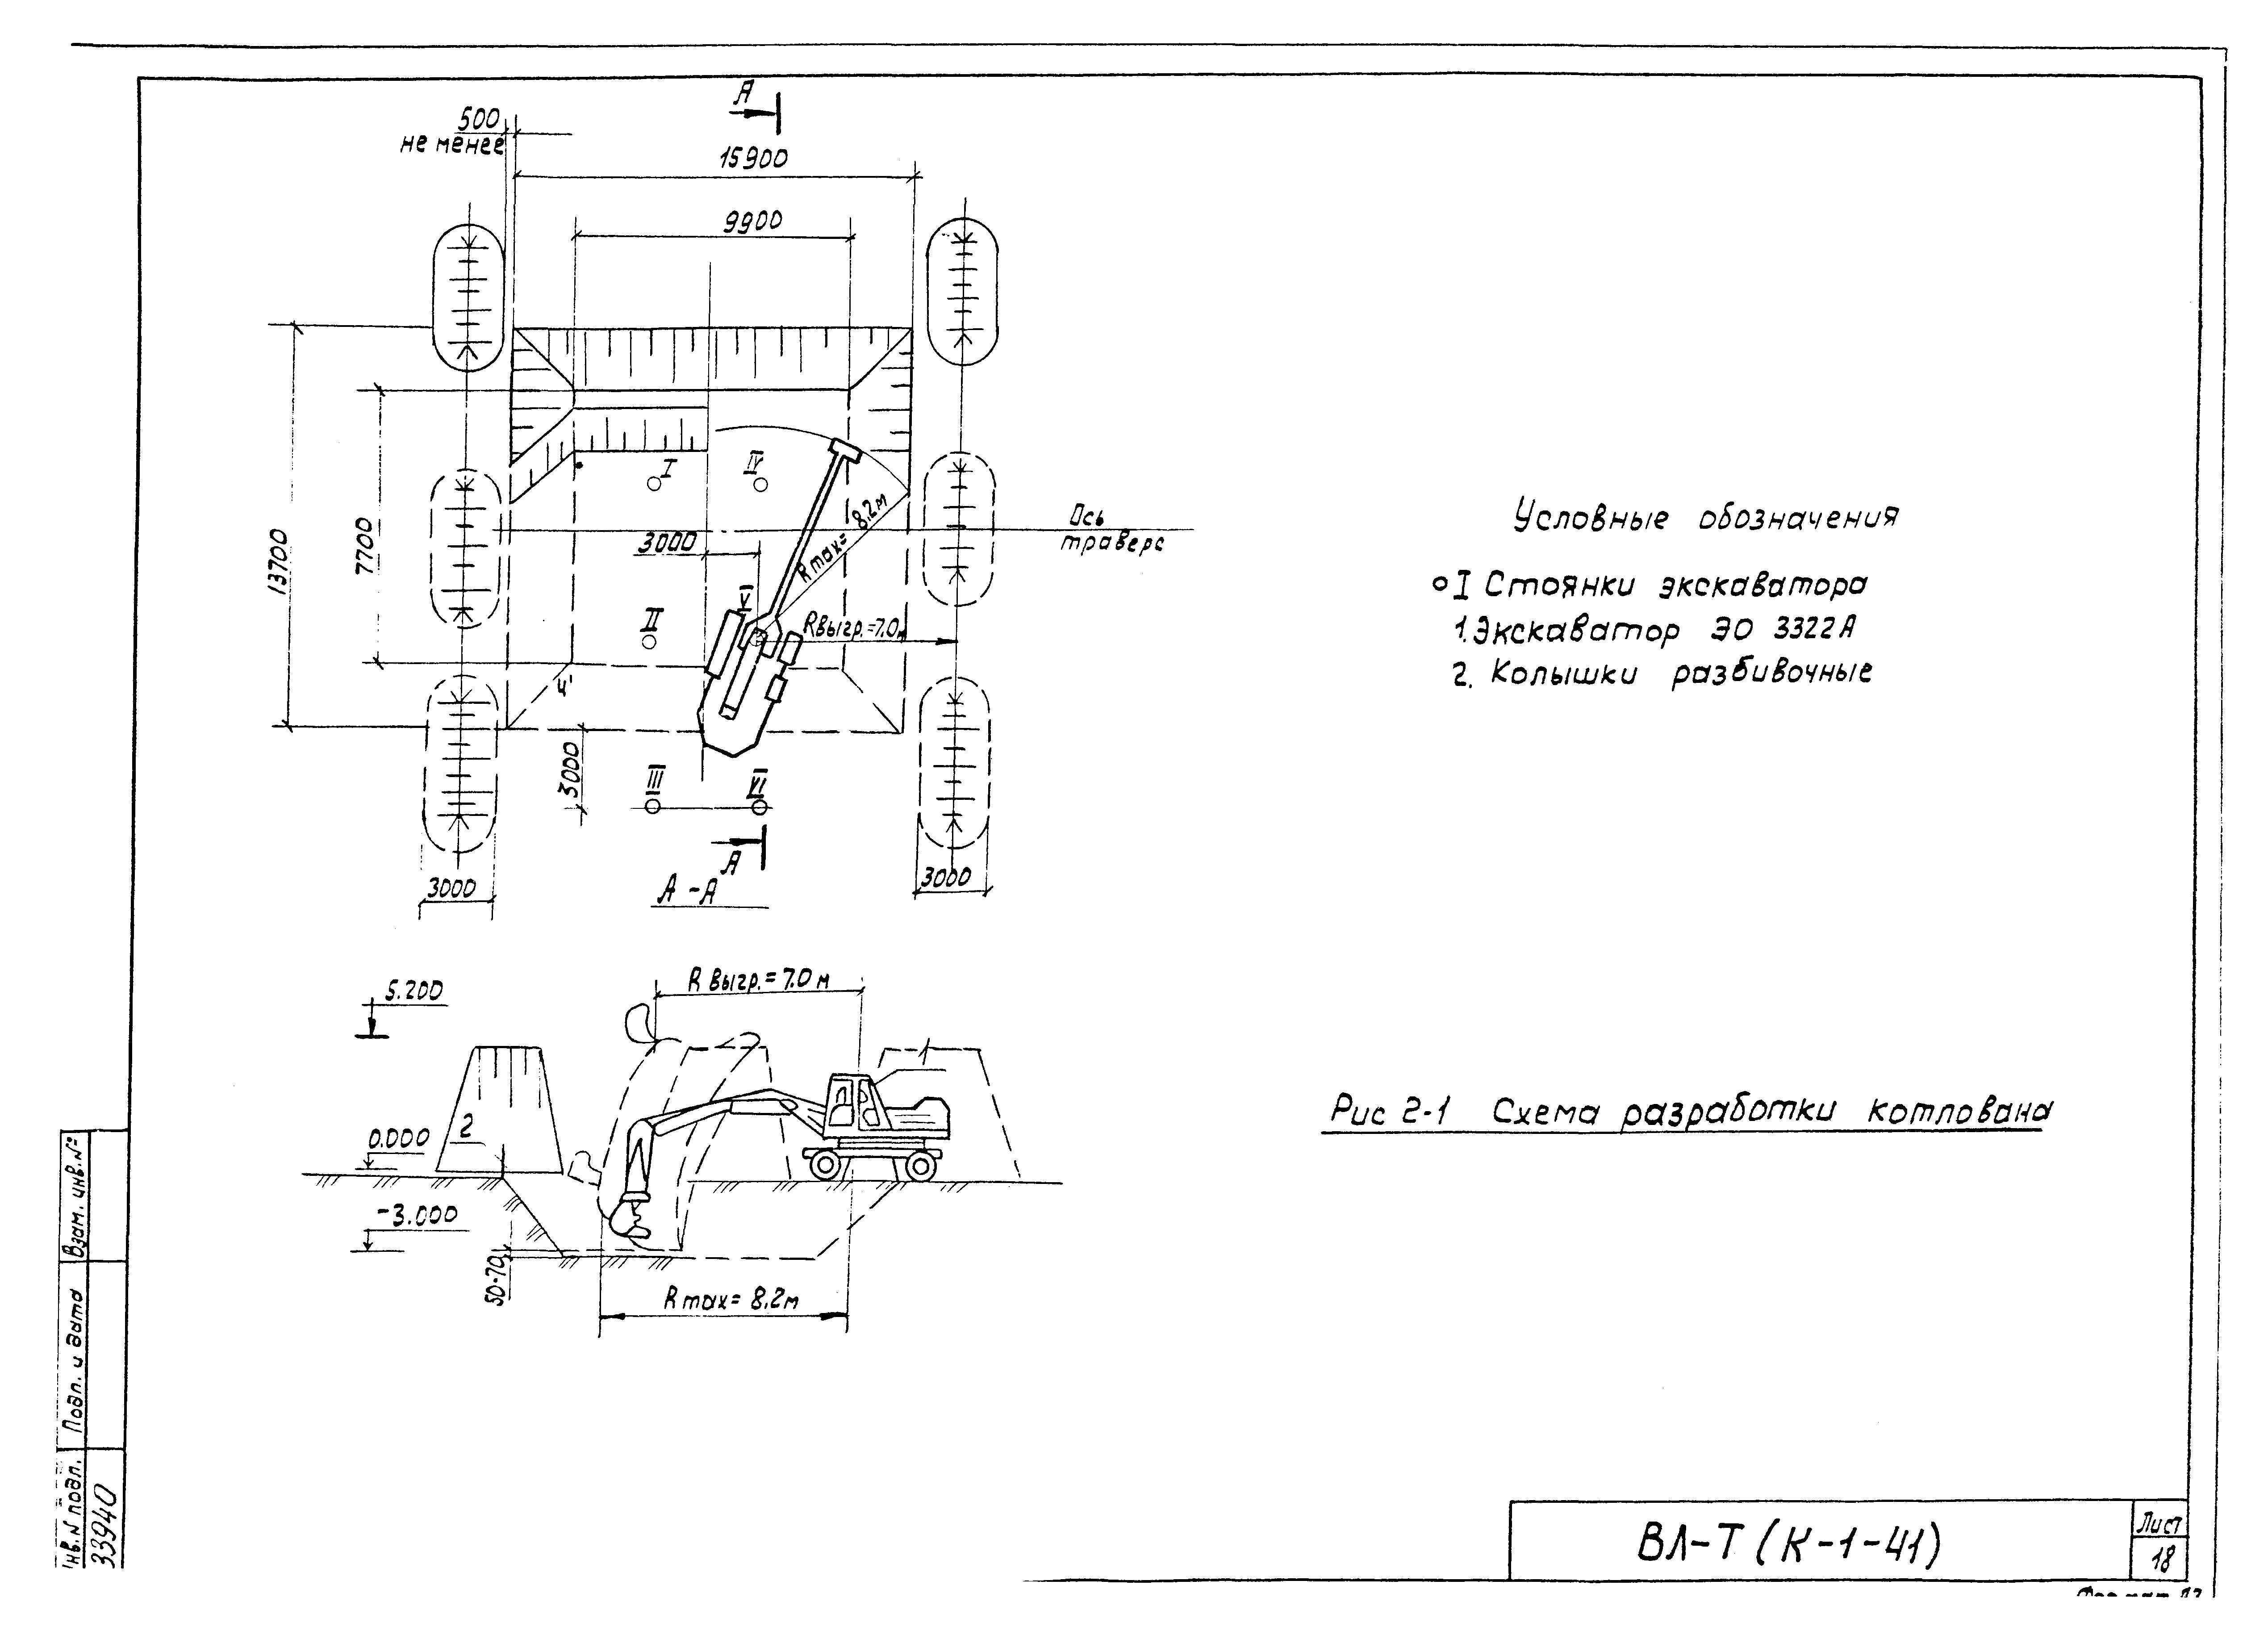 Технологическая карта К-1-41-2